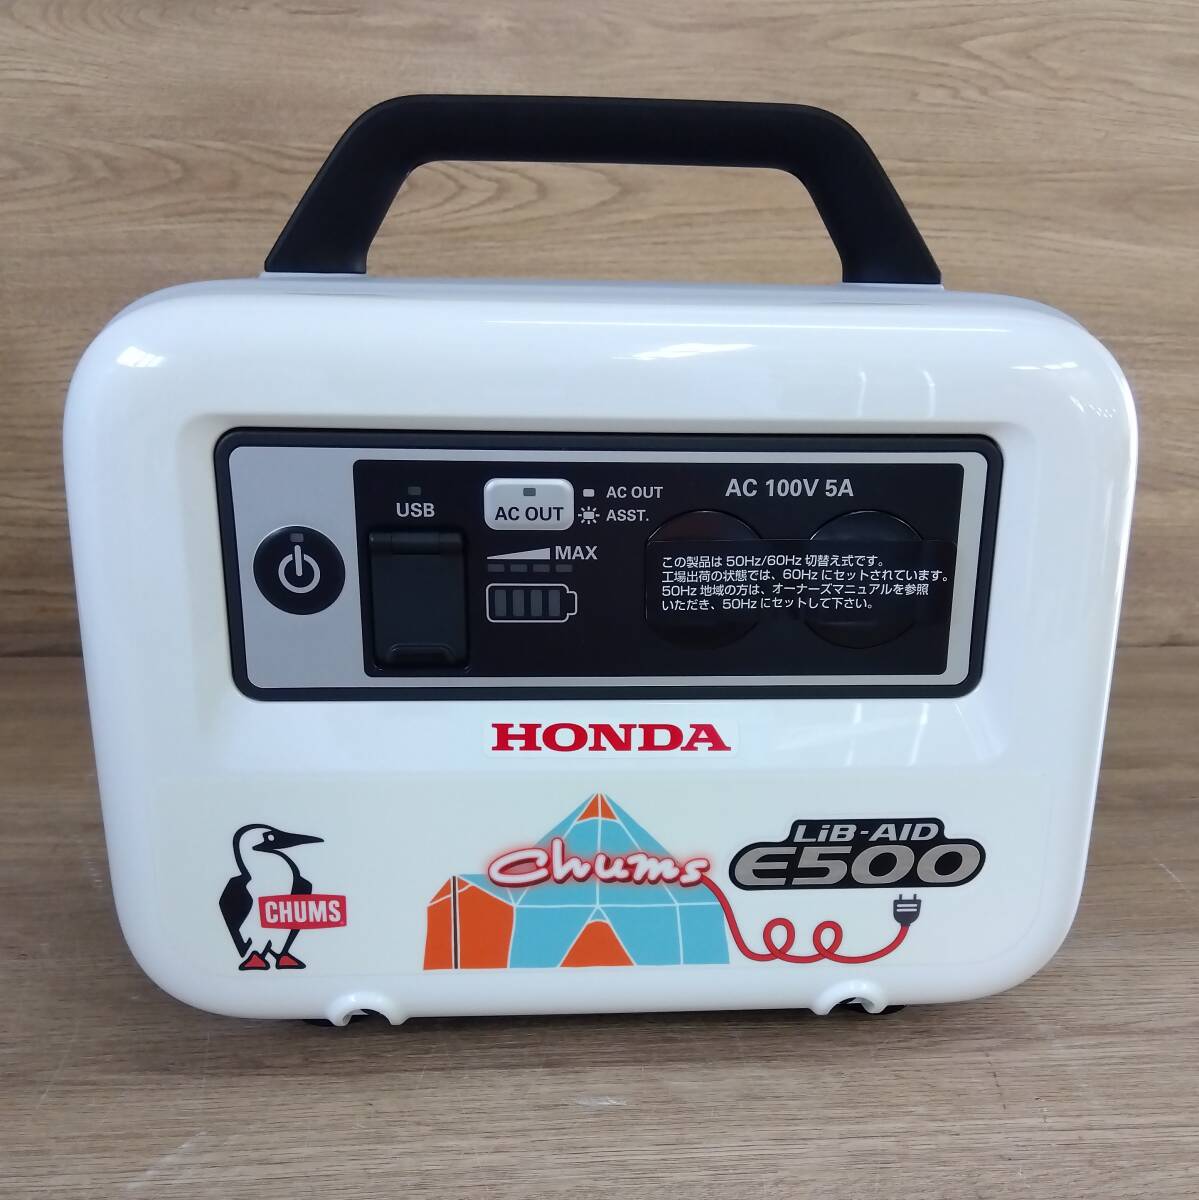 美品 ホンダ 蓄電池 LiB-AID E500 チャムス限定デザイン HONDA モバイルバッテリー 防災 アウトドア 釣り キャンプ tmc02055634の画像3